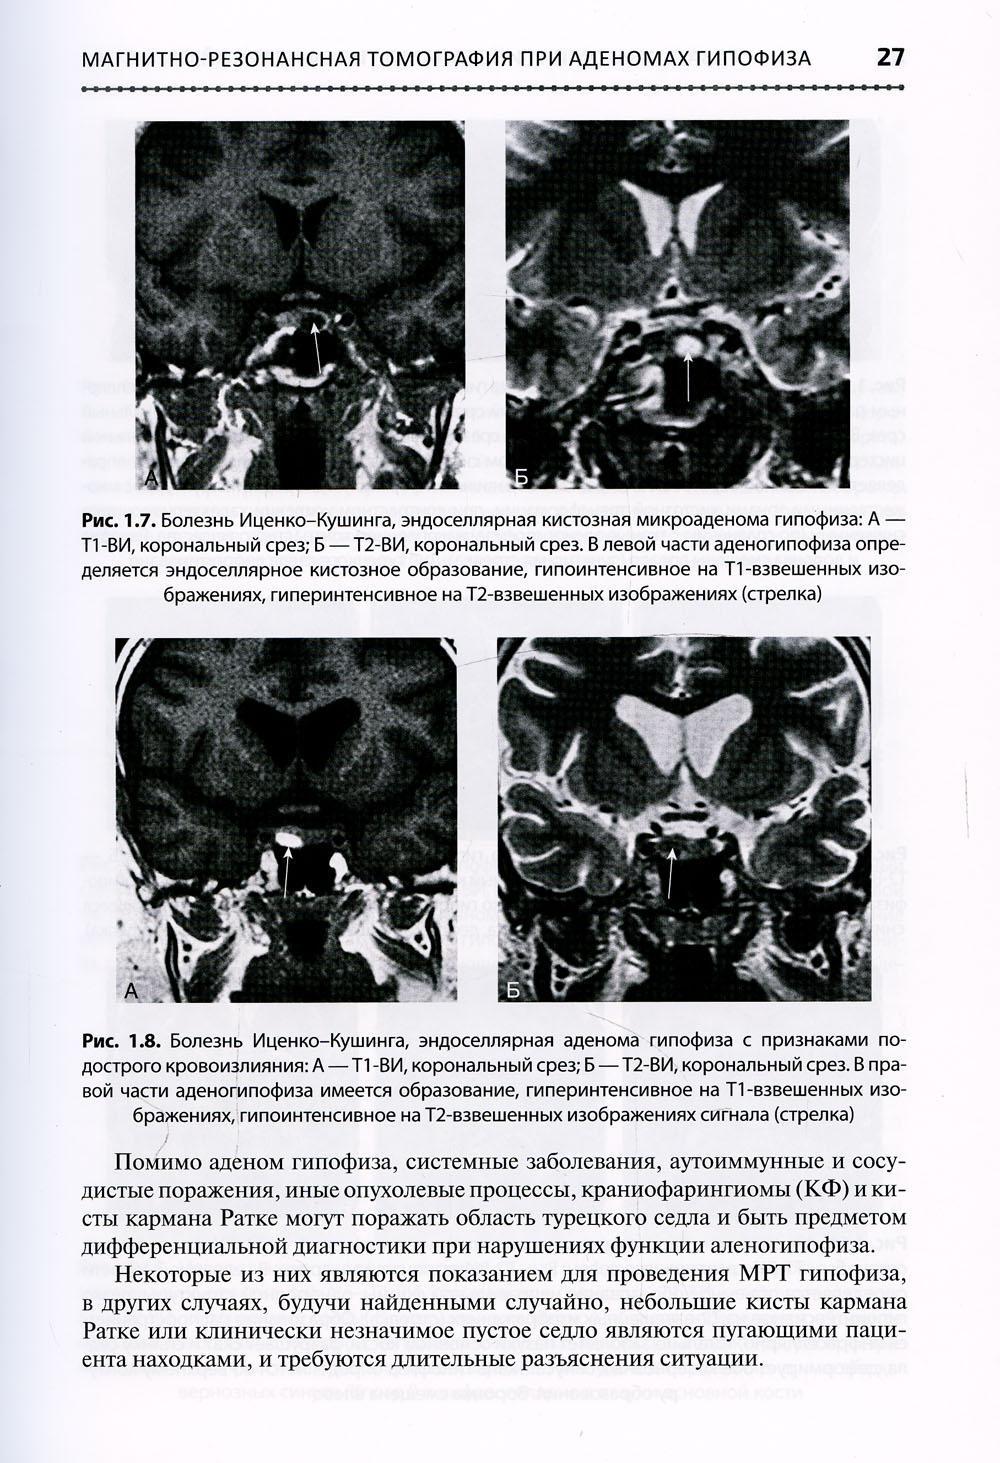 Основы клинической нейроэндокринологии